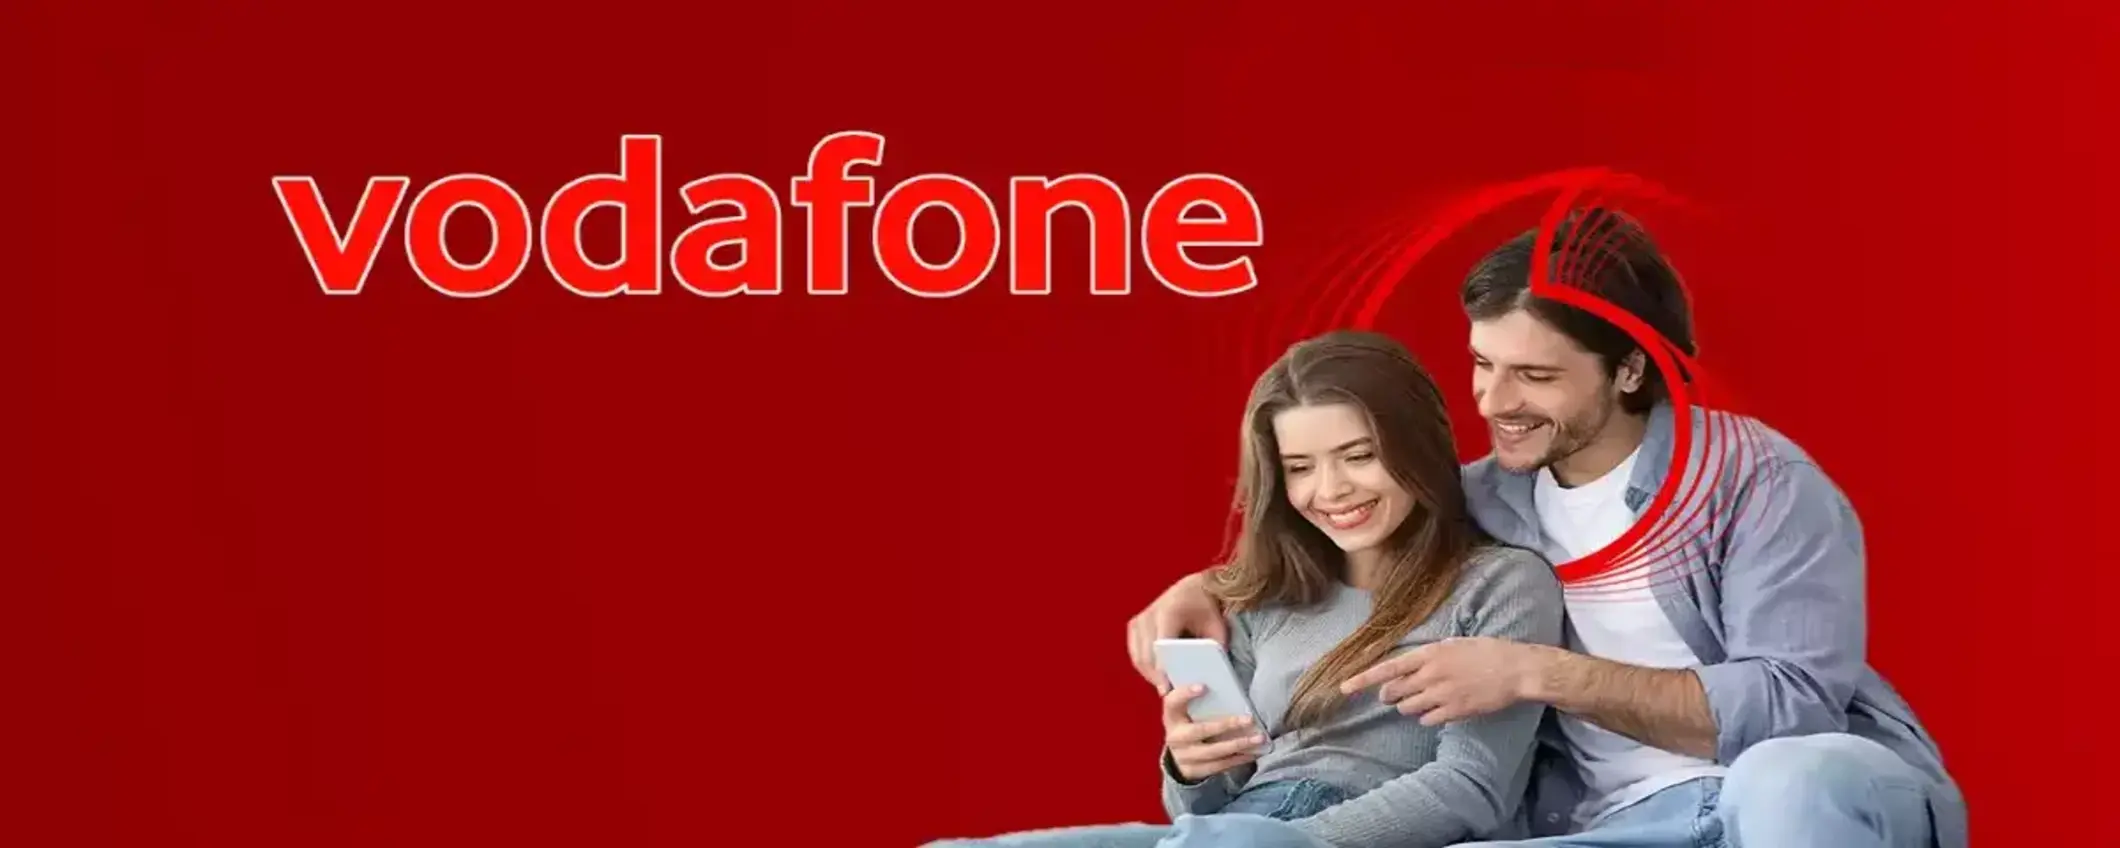 Vodafone lancia una promo eccezionale: fibra alla massima velocità a soli 24,90€/mese